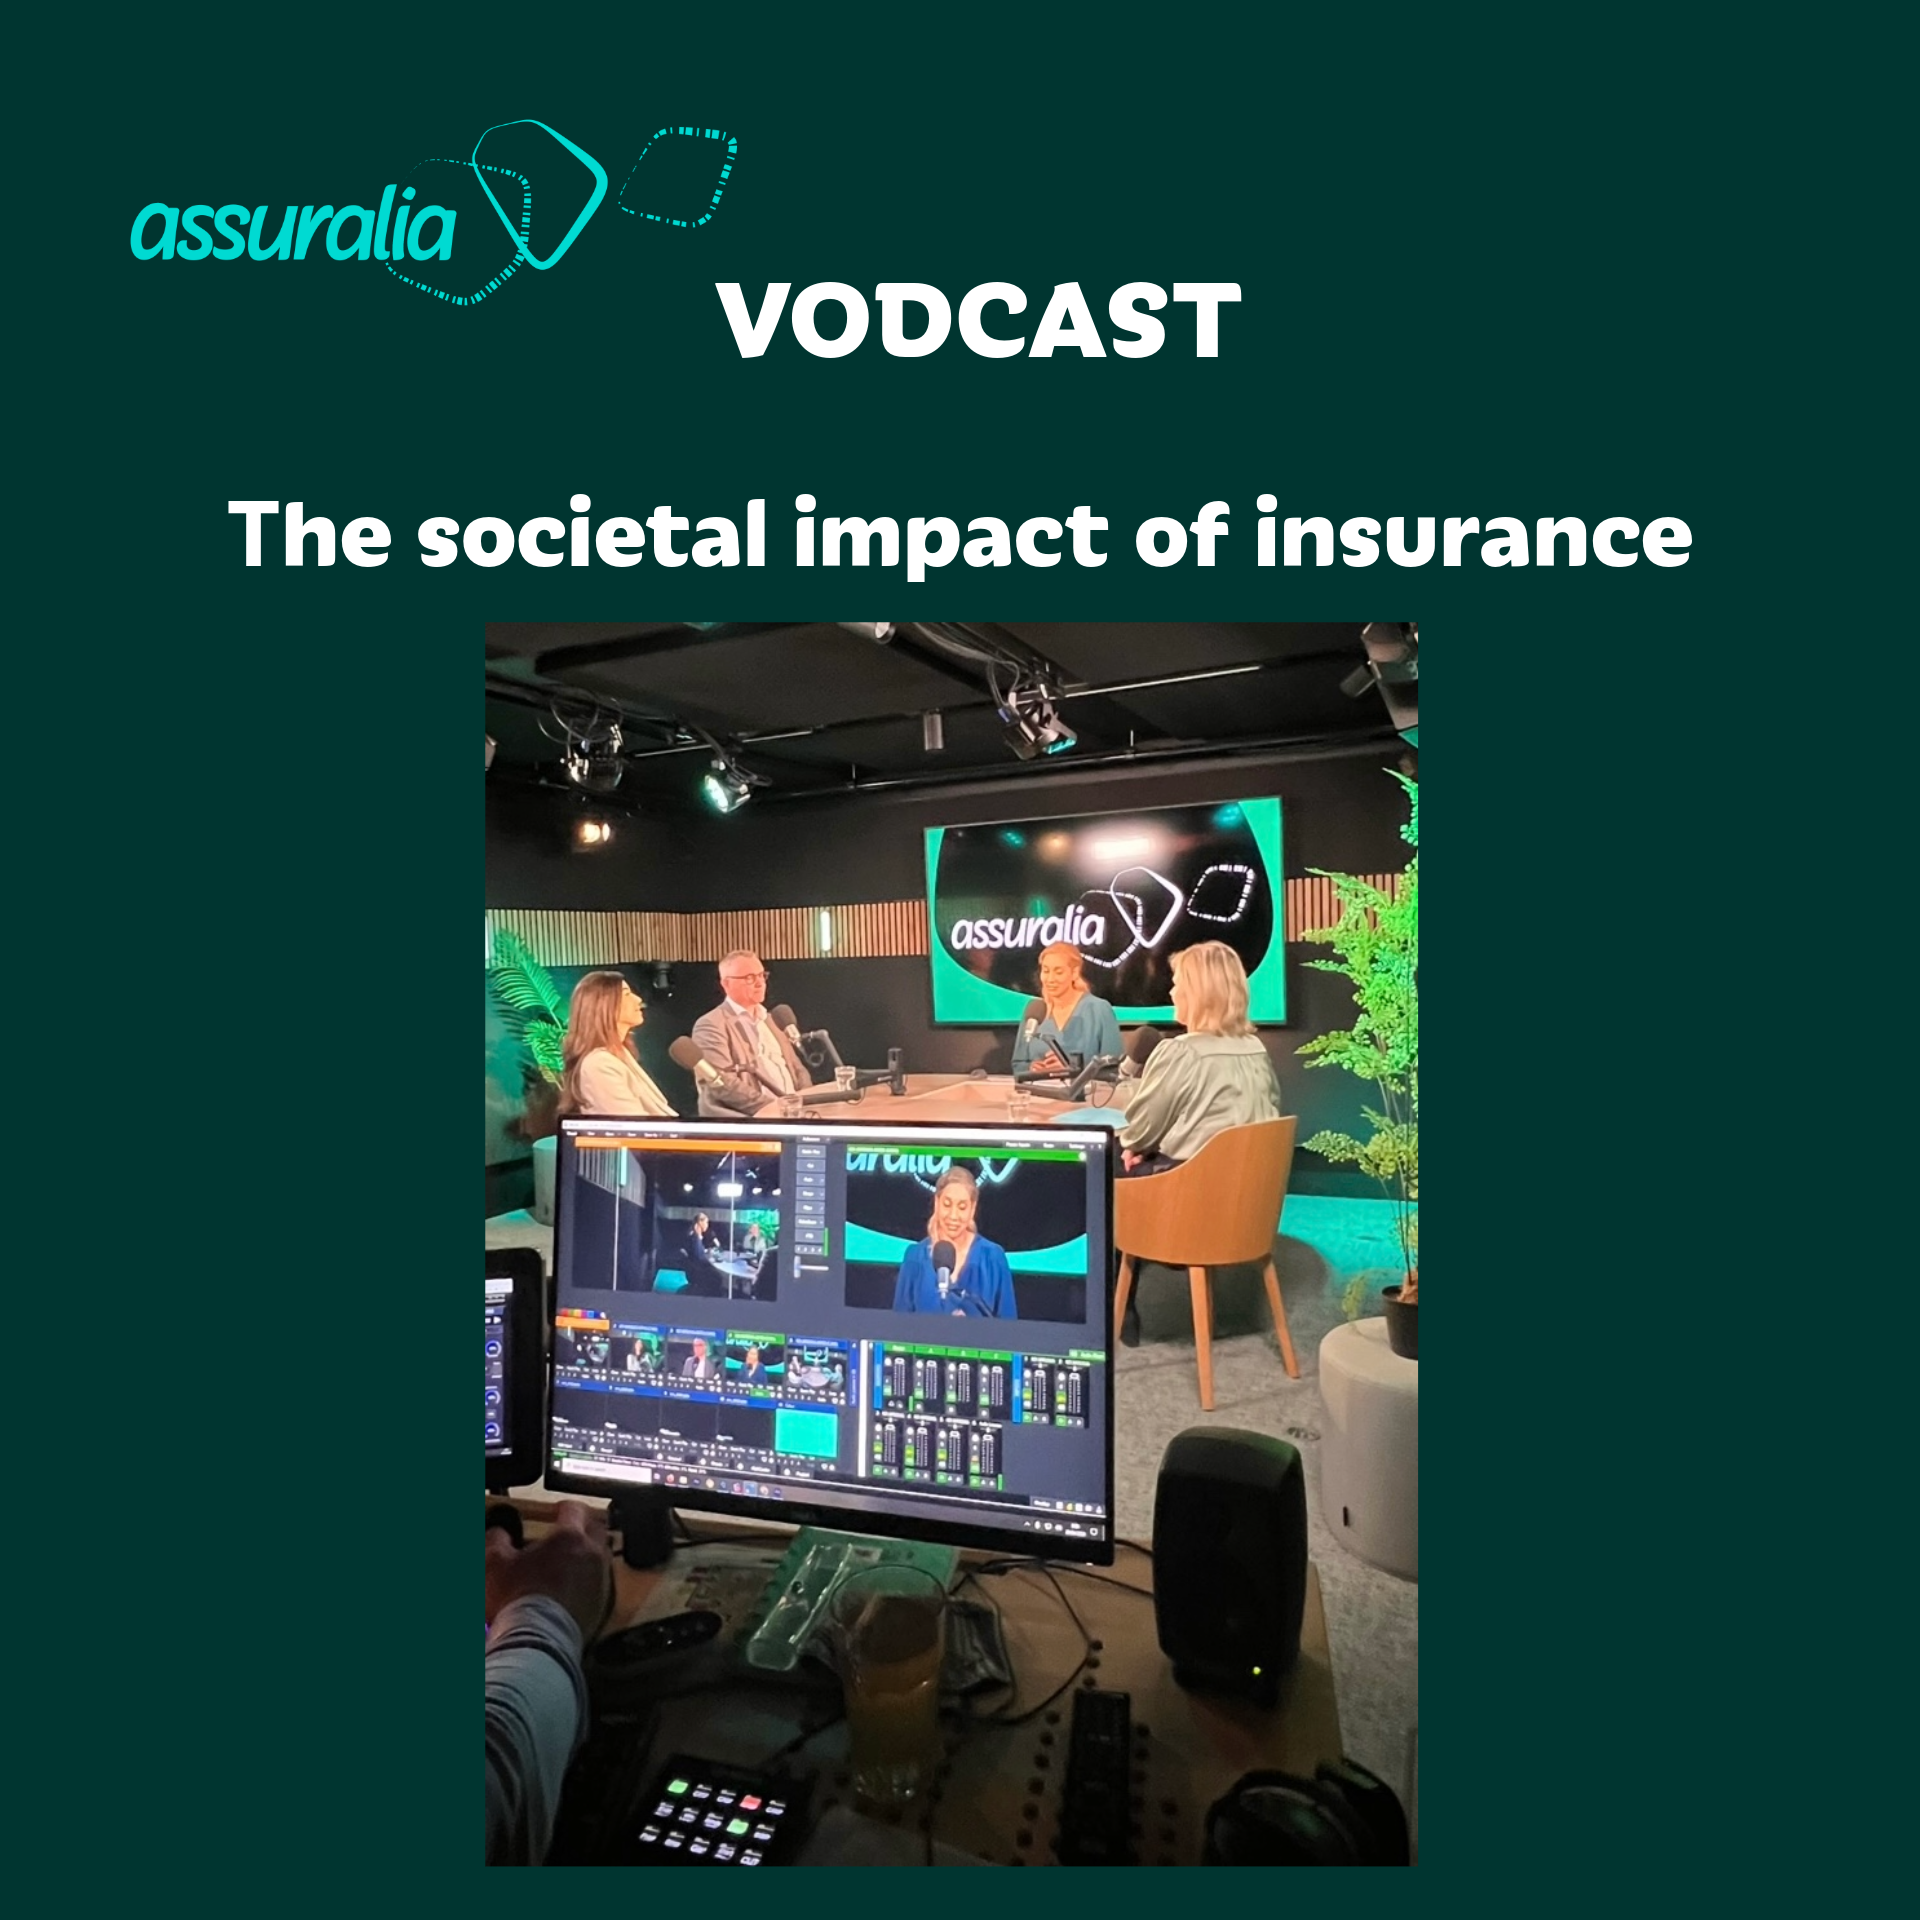 Le tout nouveau vodcast d’Assuralia discute des grandes évolutions sociétales dans le secteur des assurances